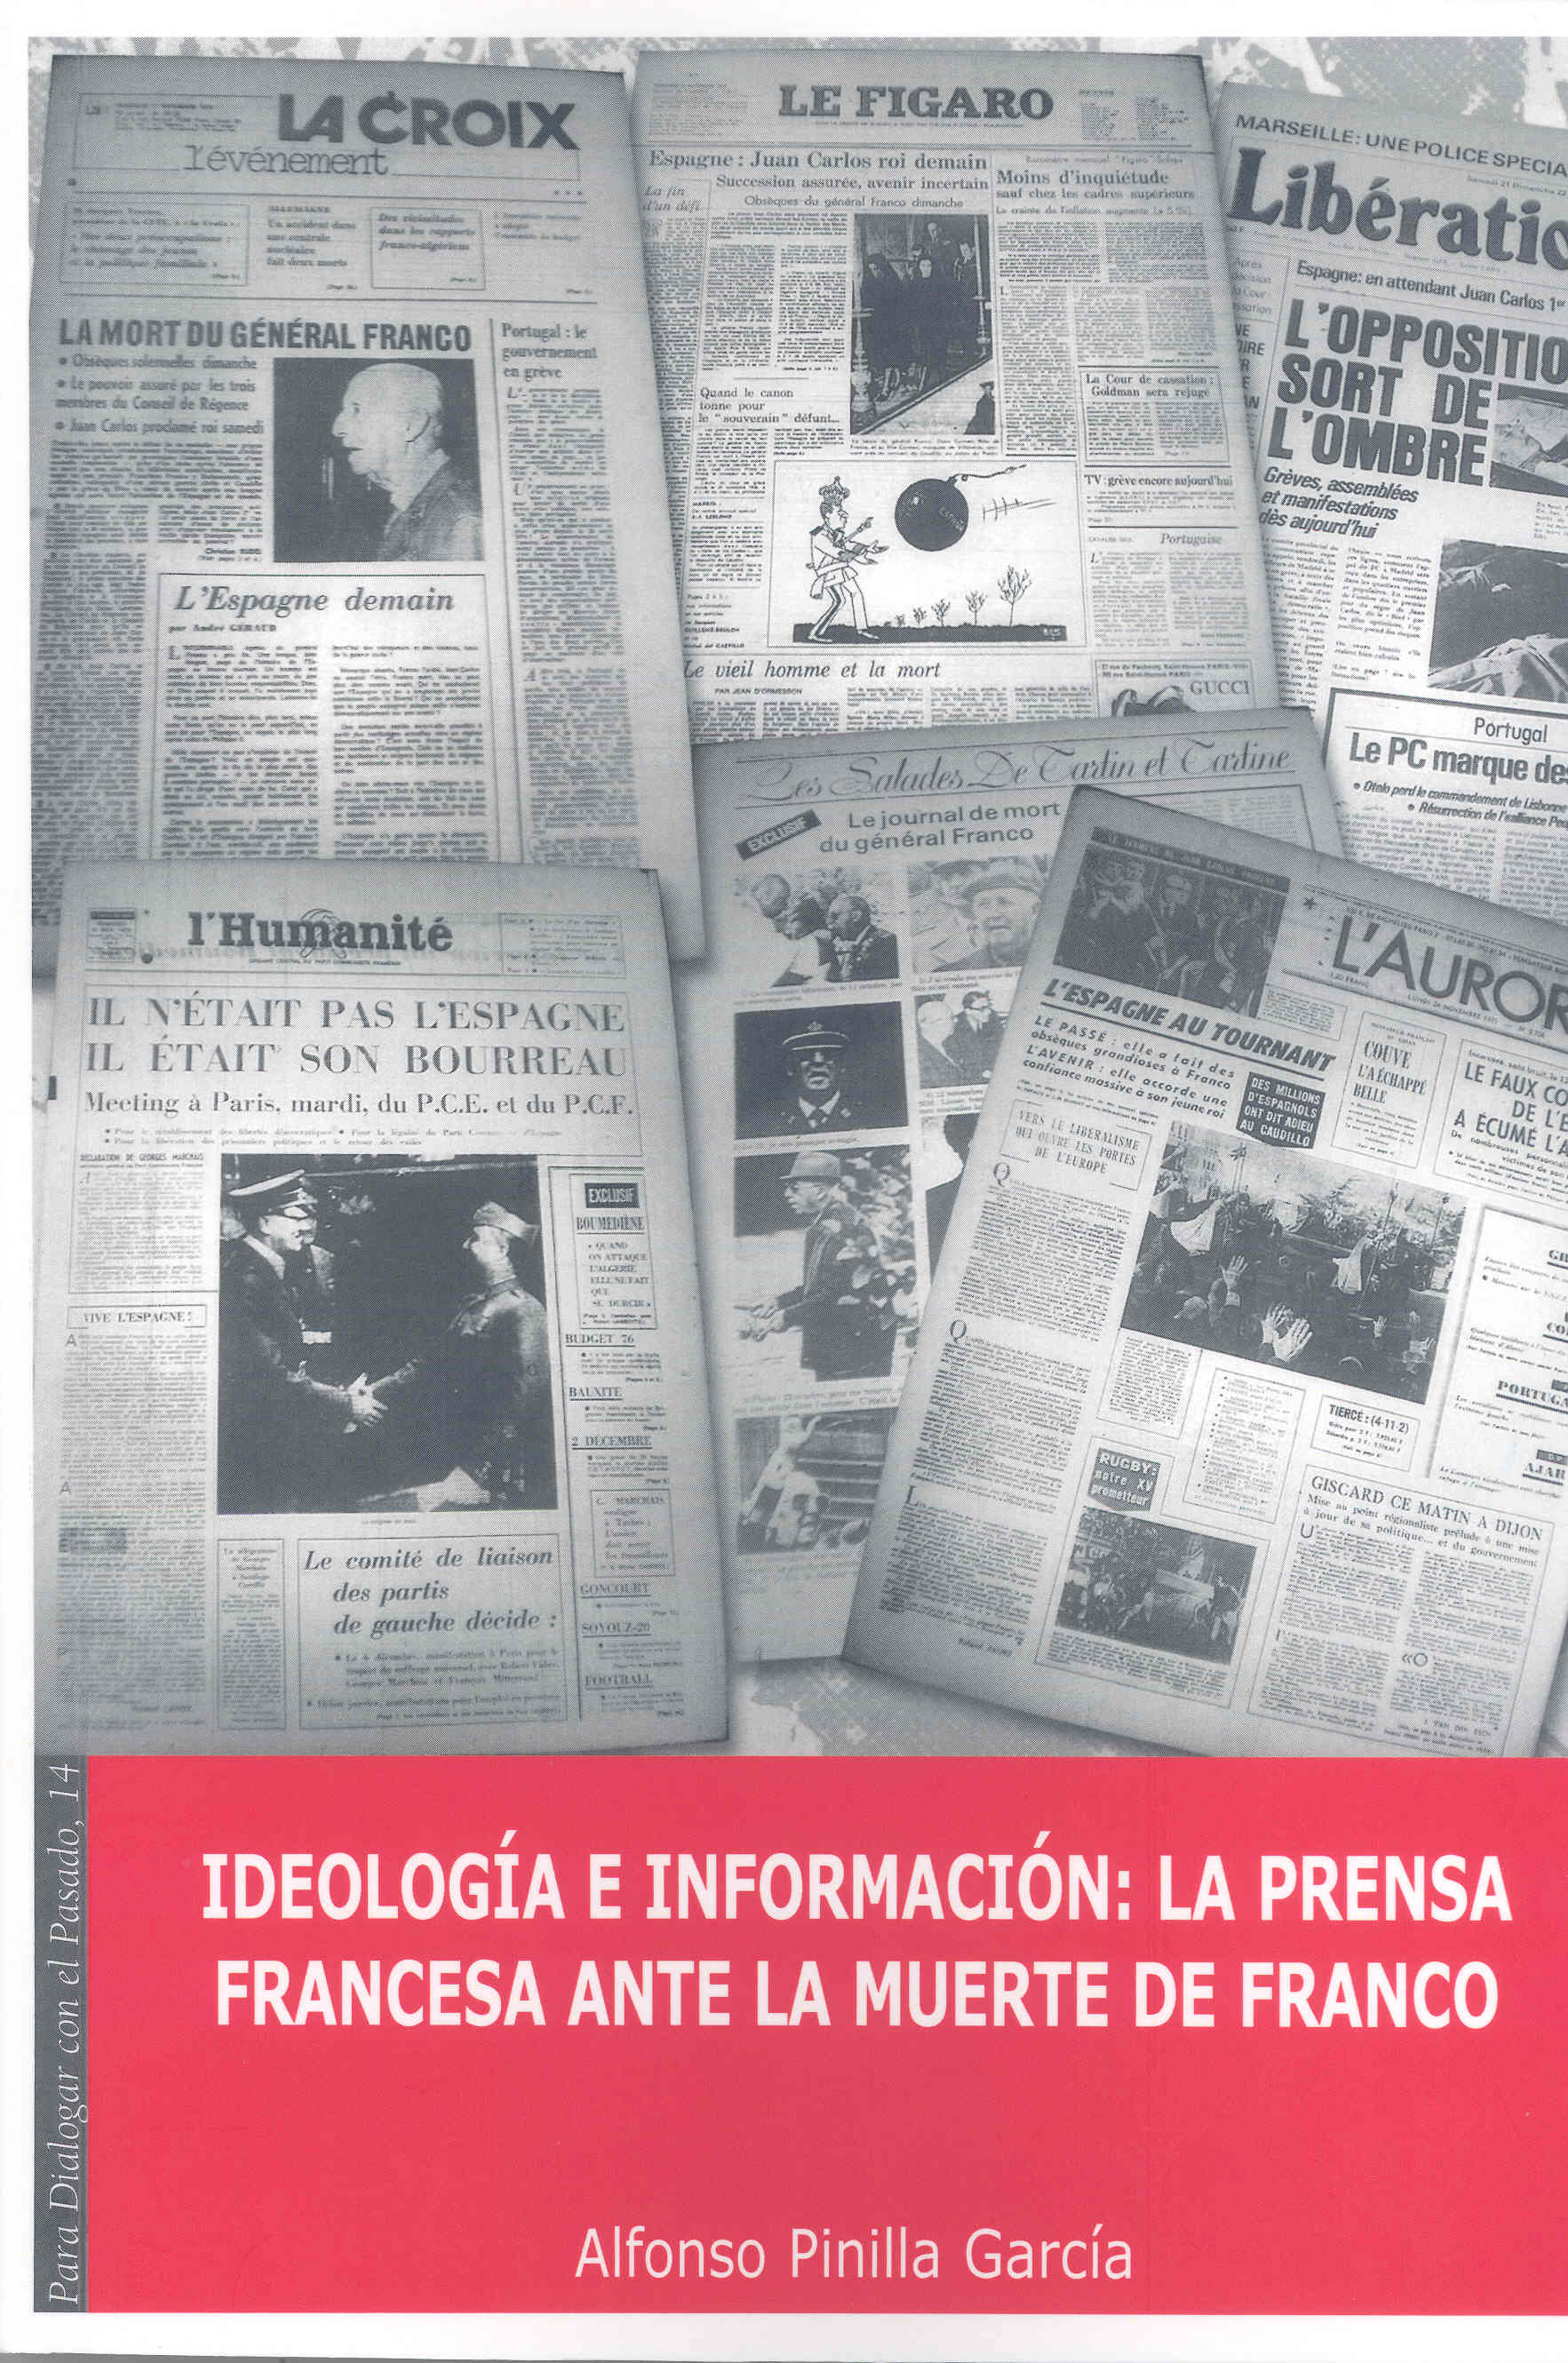 Imagen de portada del libro Ideología e información